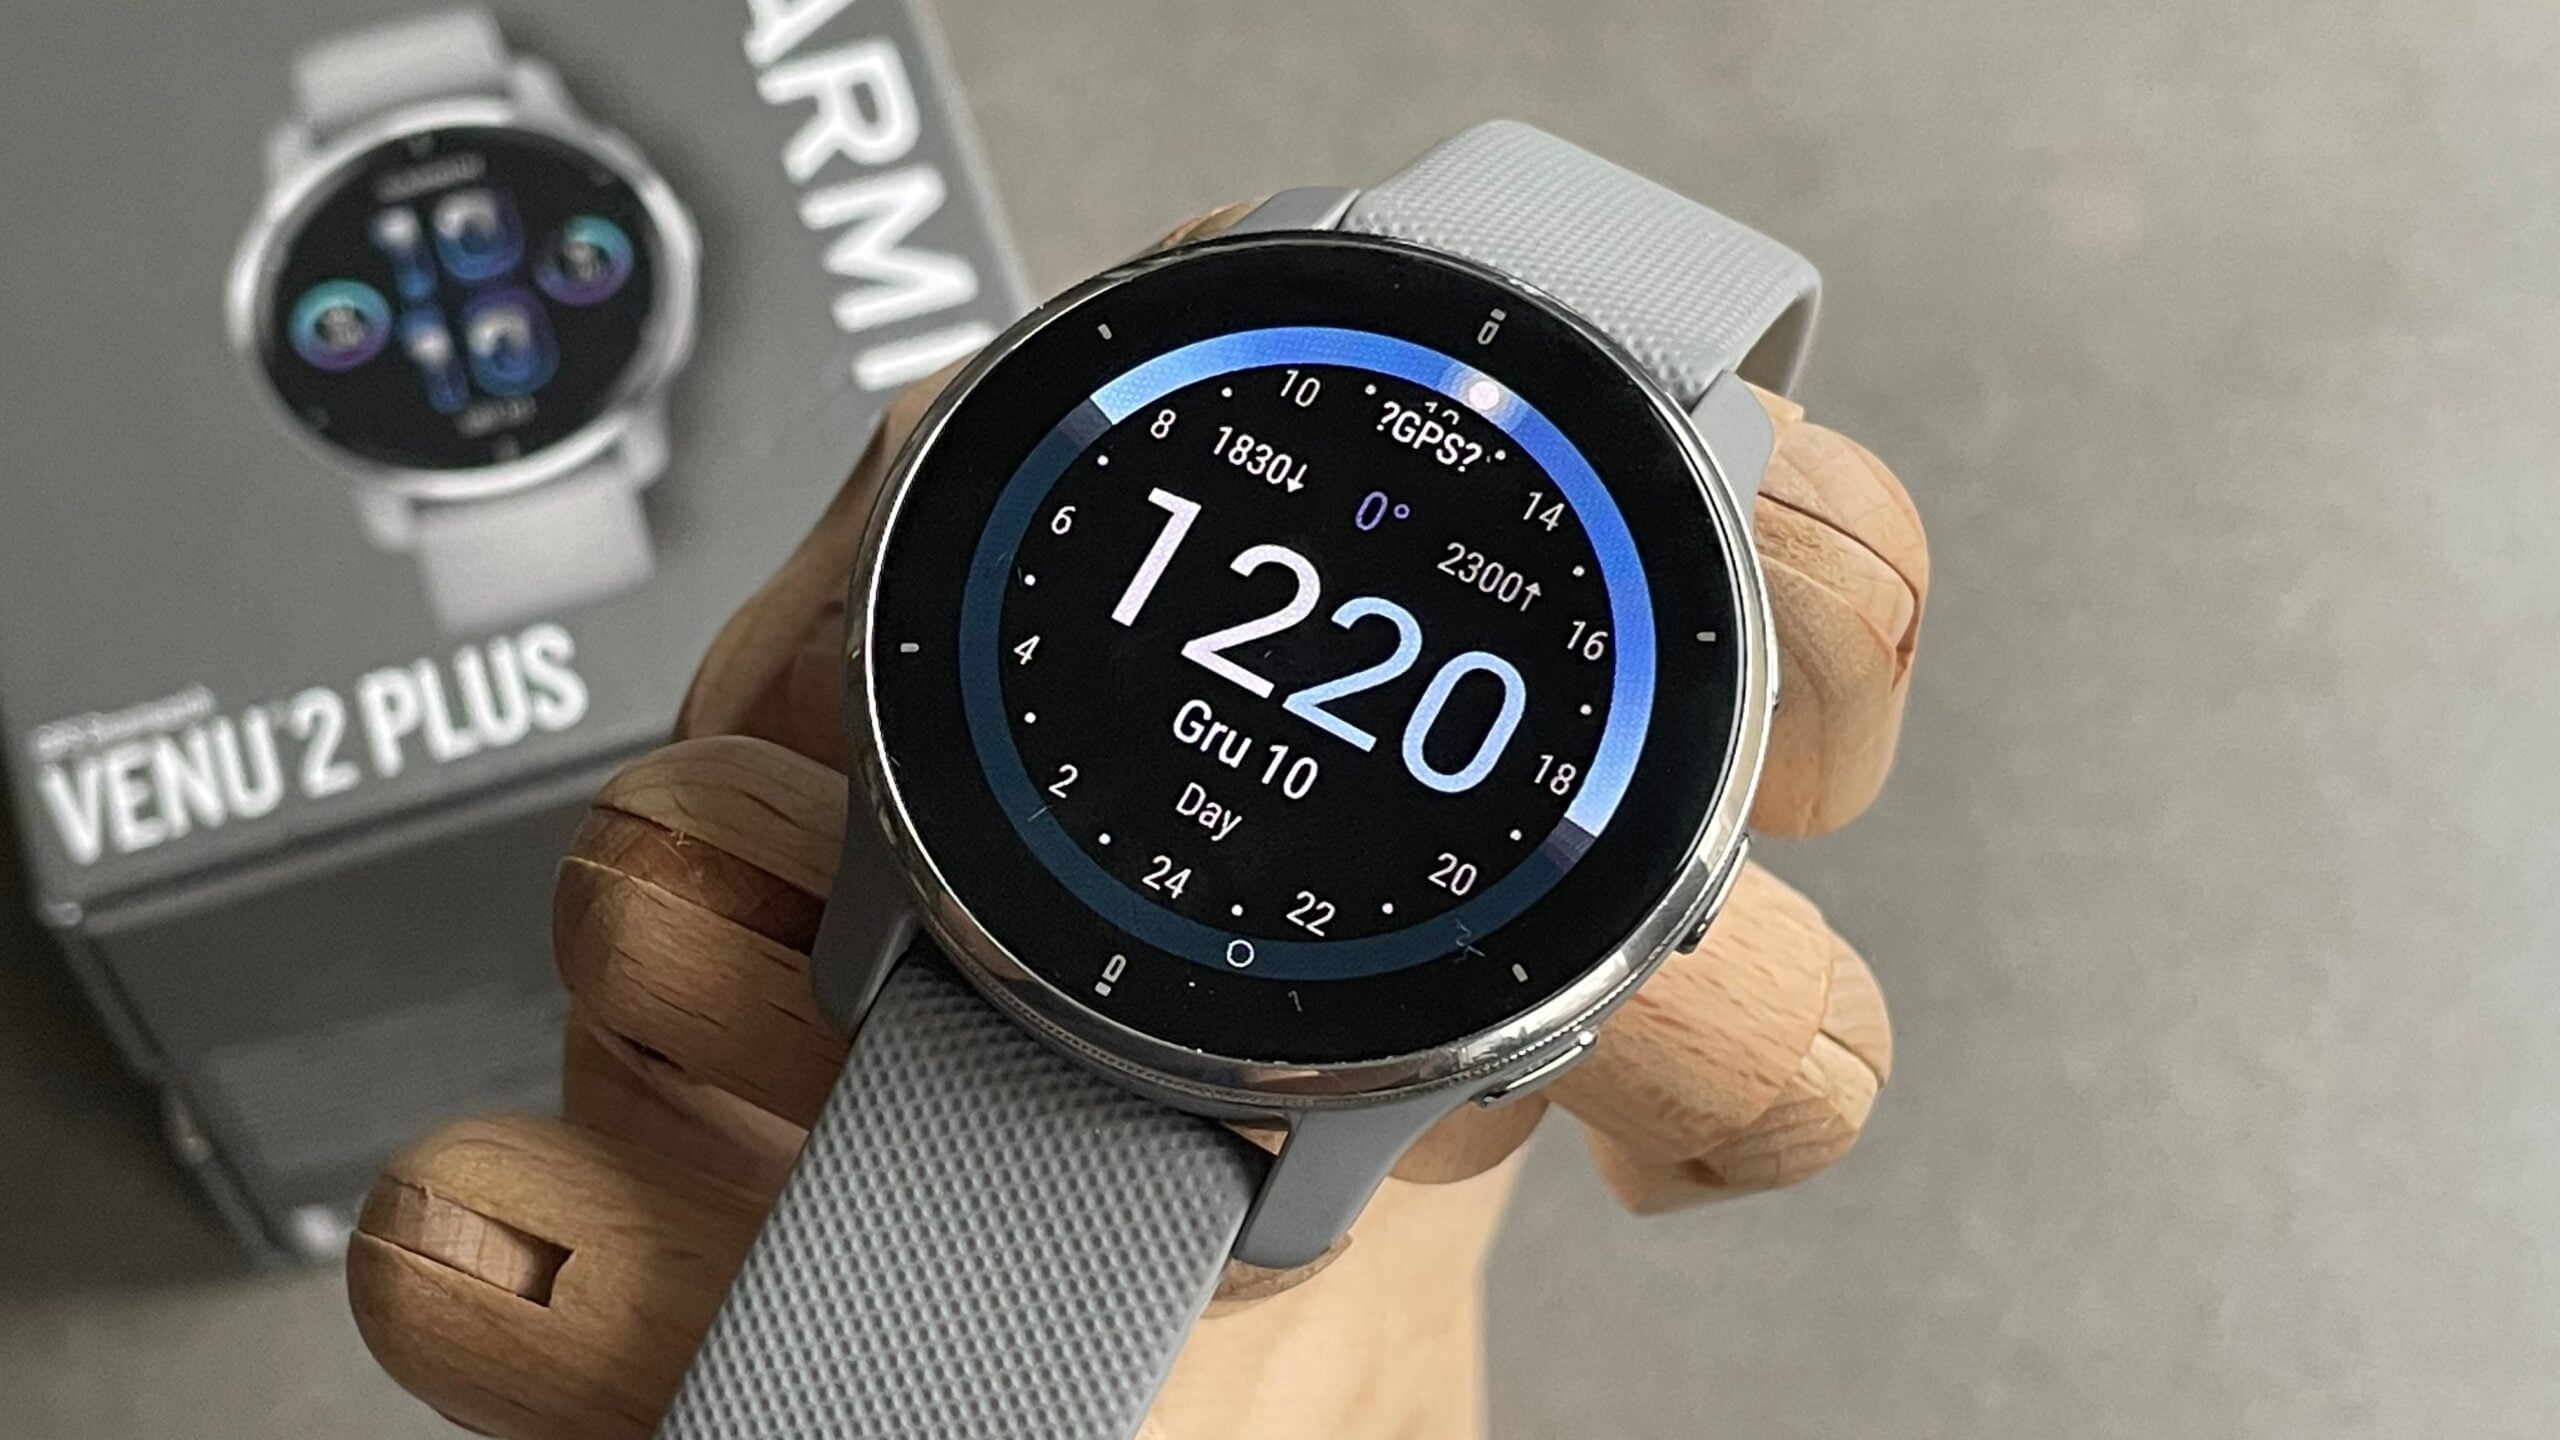 Inteligentny zegarek Garmin Venu 2 Plus na drewnianym stojaku, z cyfrową tarczą pokazującą godzinę 12:20 i datę "Gru 10".